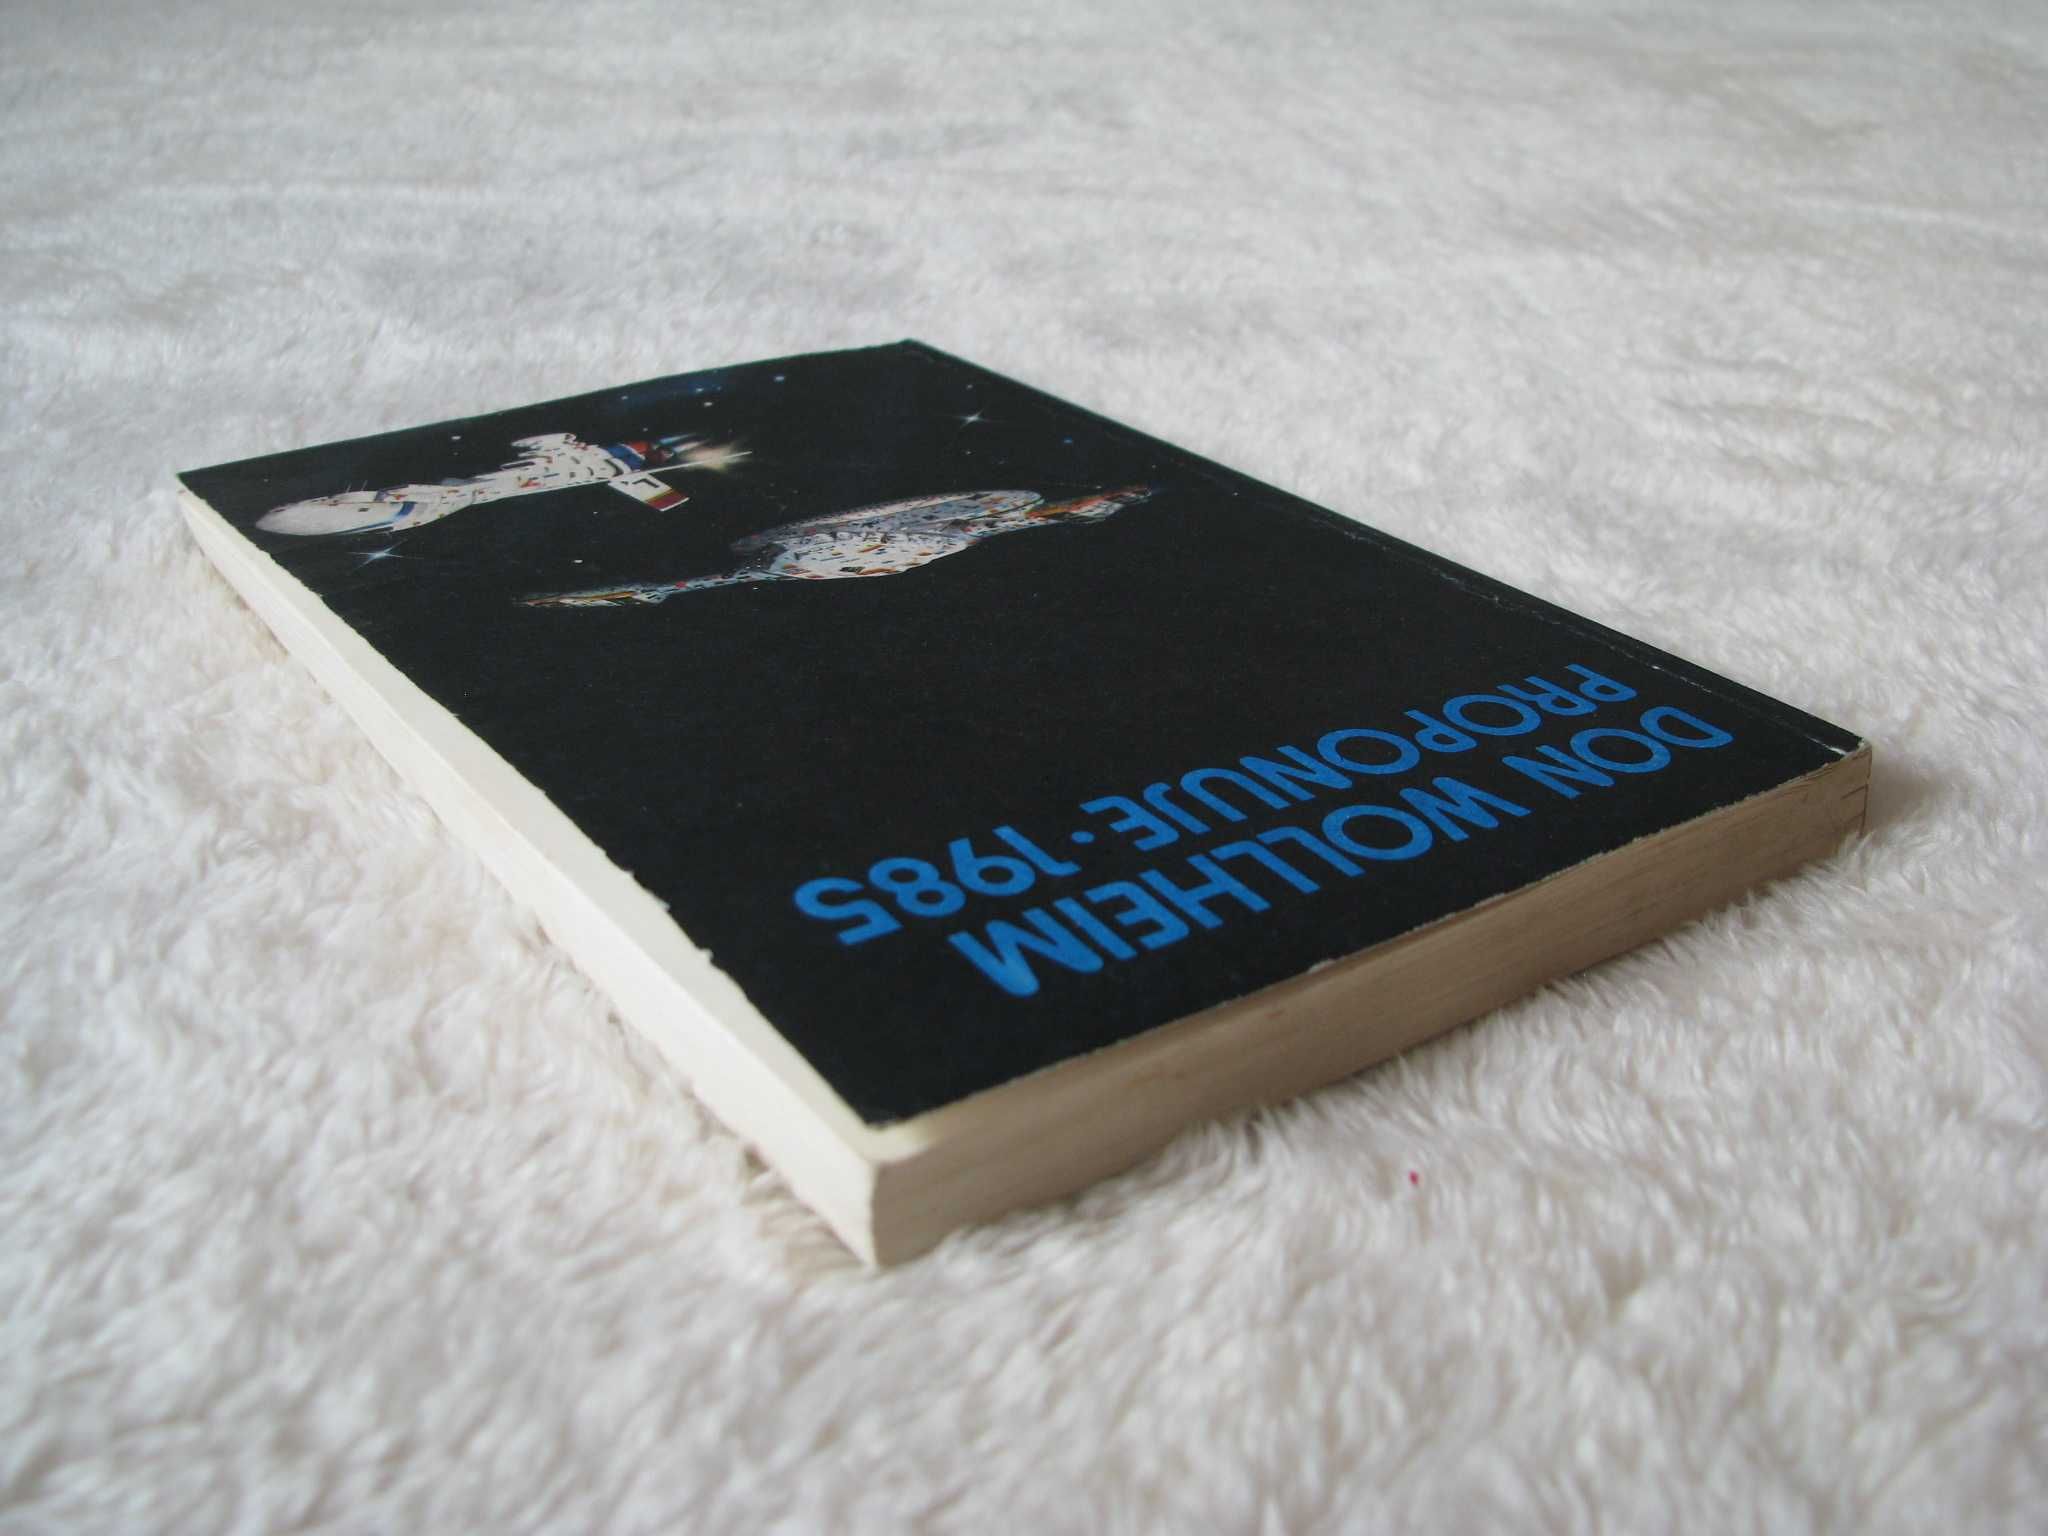 Don Wollheim proponuje 1985 Najlepsze opowiadania SF roku 1984